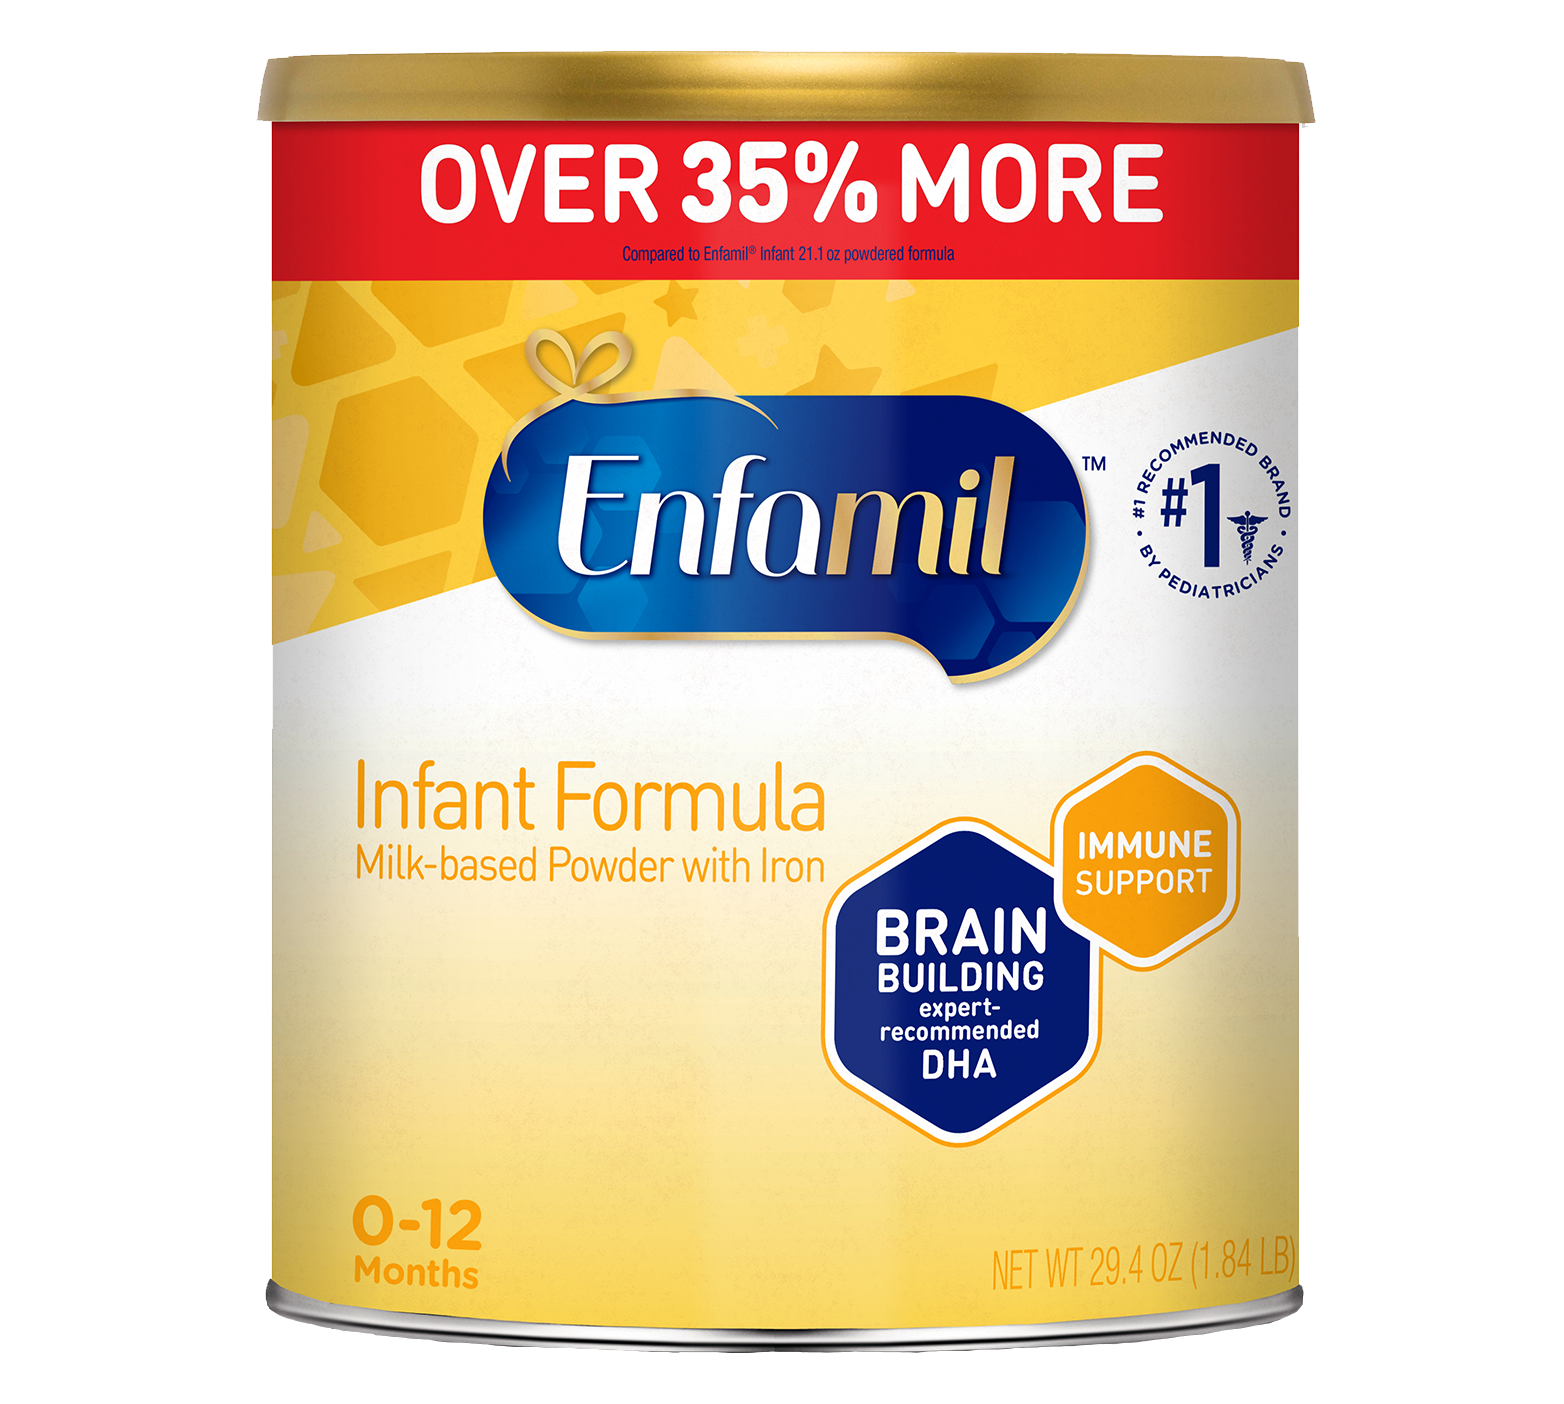 Enfamil® Infant Formula Powder 29.4 oz Can Online Enfamil